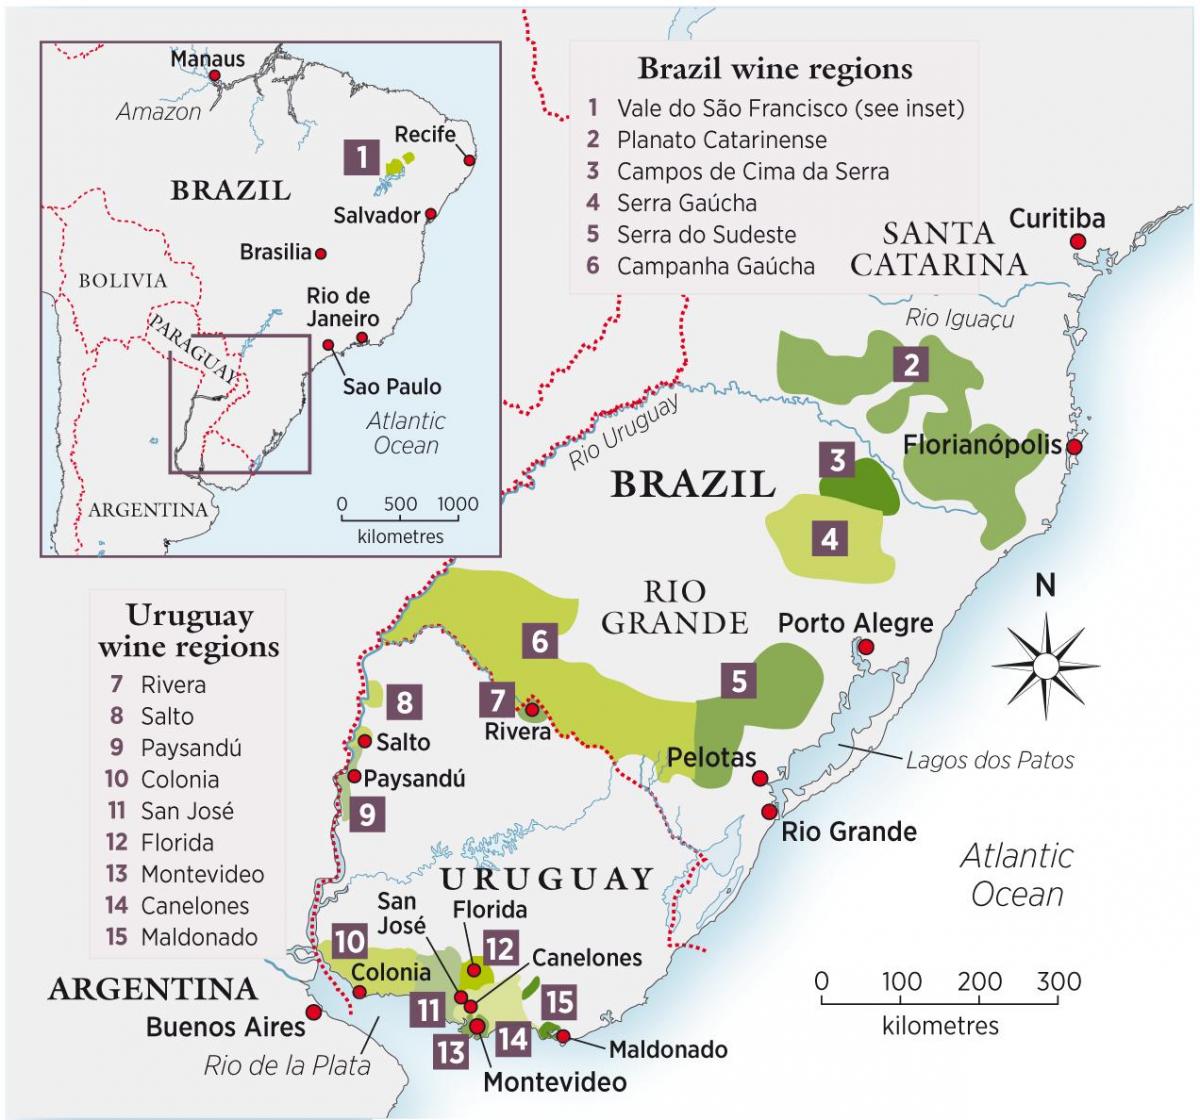 Mapa de Uruguay vino